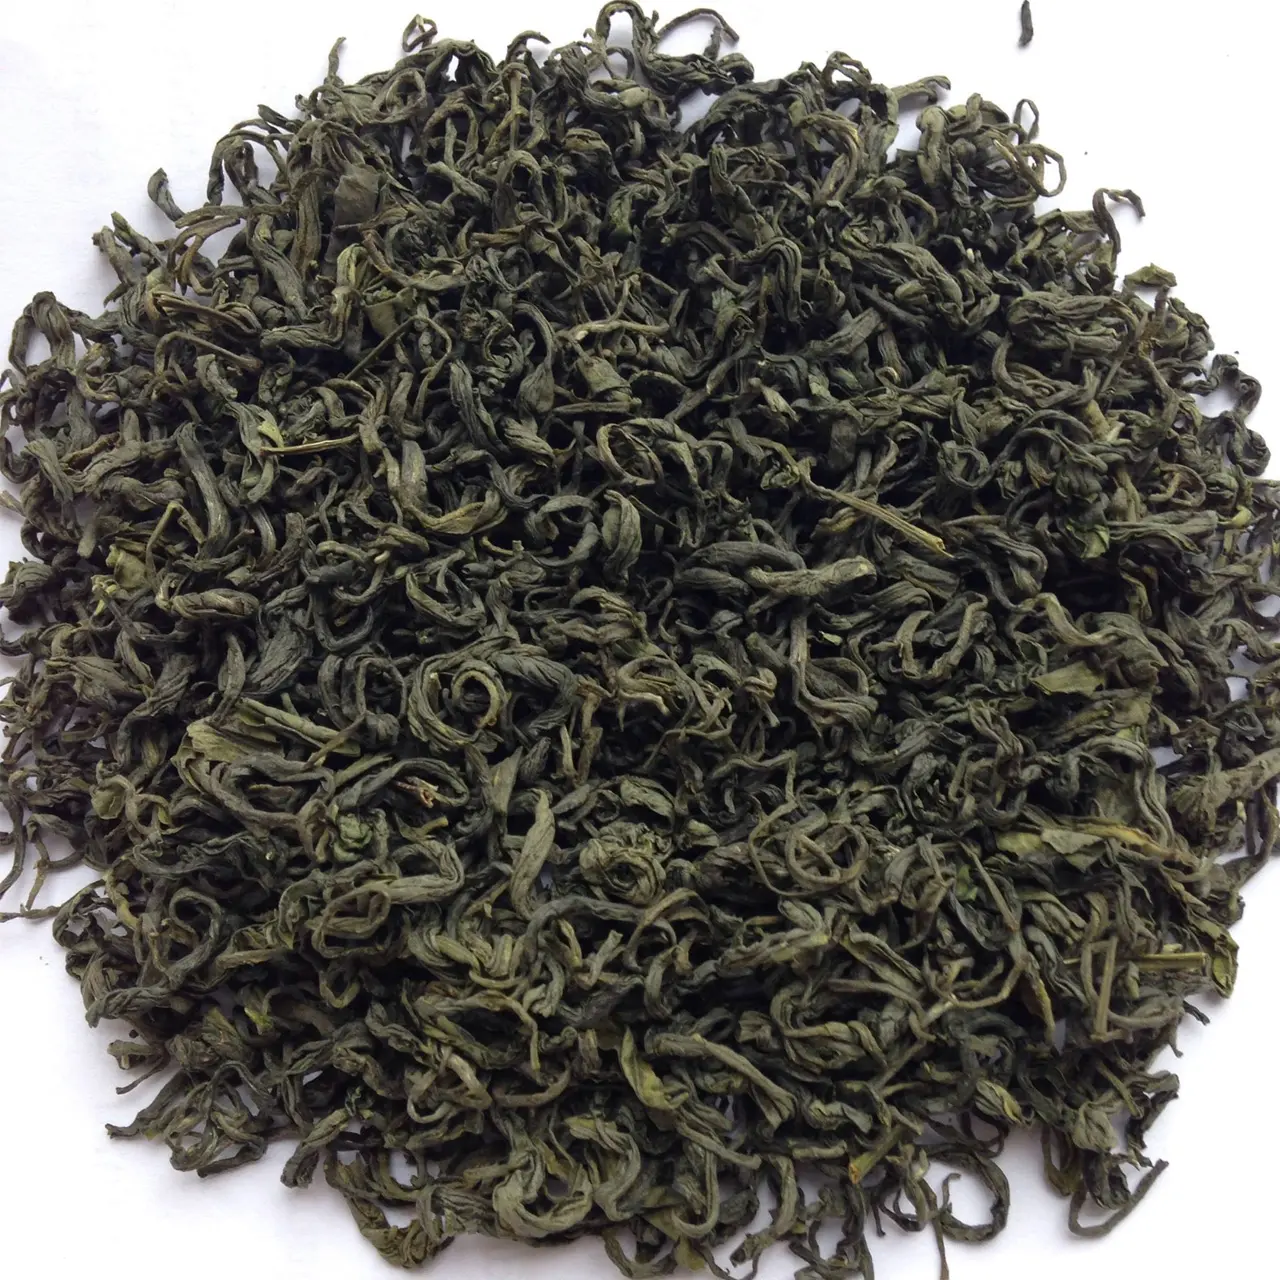 Produkte in loser Schüttung Bio-Extrakt Pulver Herstellung Tee kiste Aroma therapie Vietnam Kräuter Schwarz Grüner Tee Abnehmen Tee